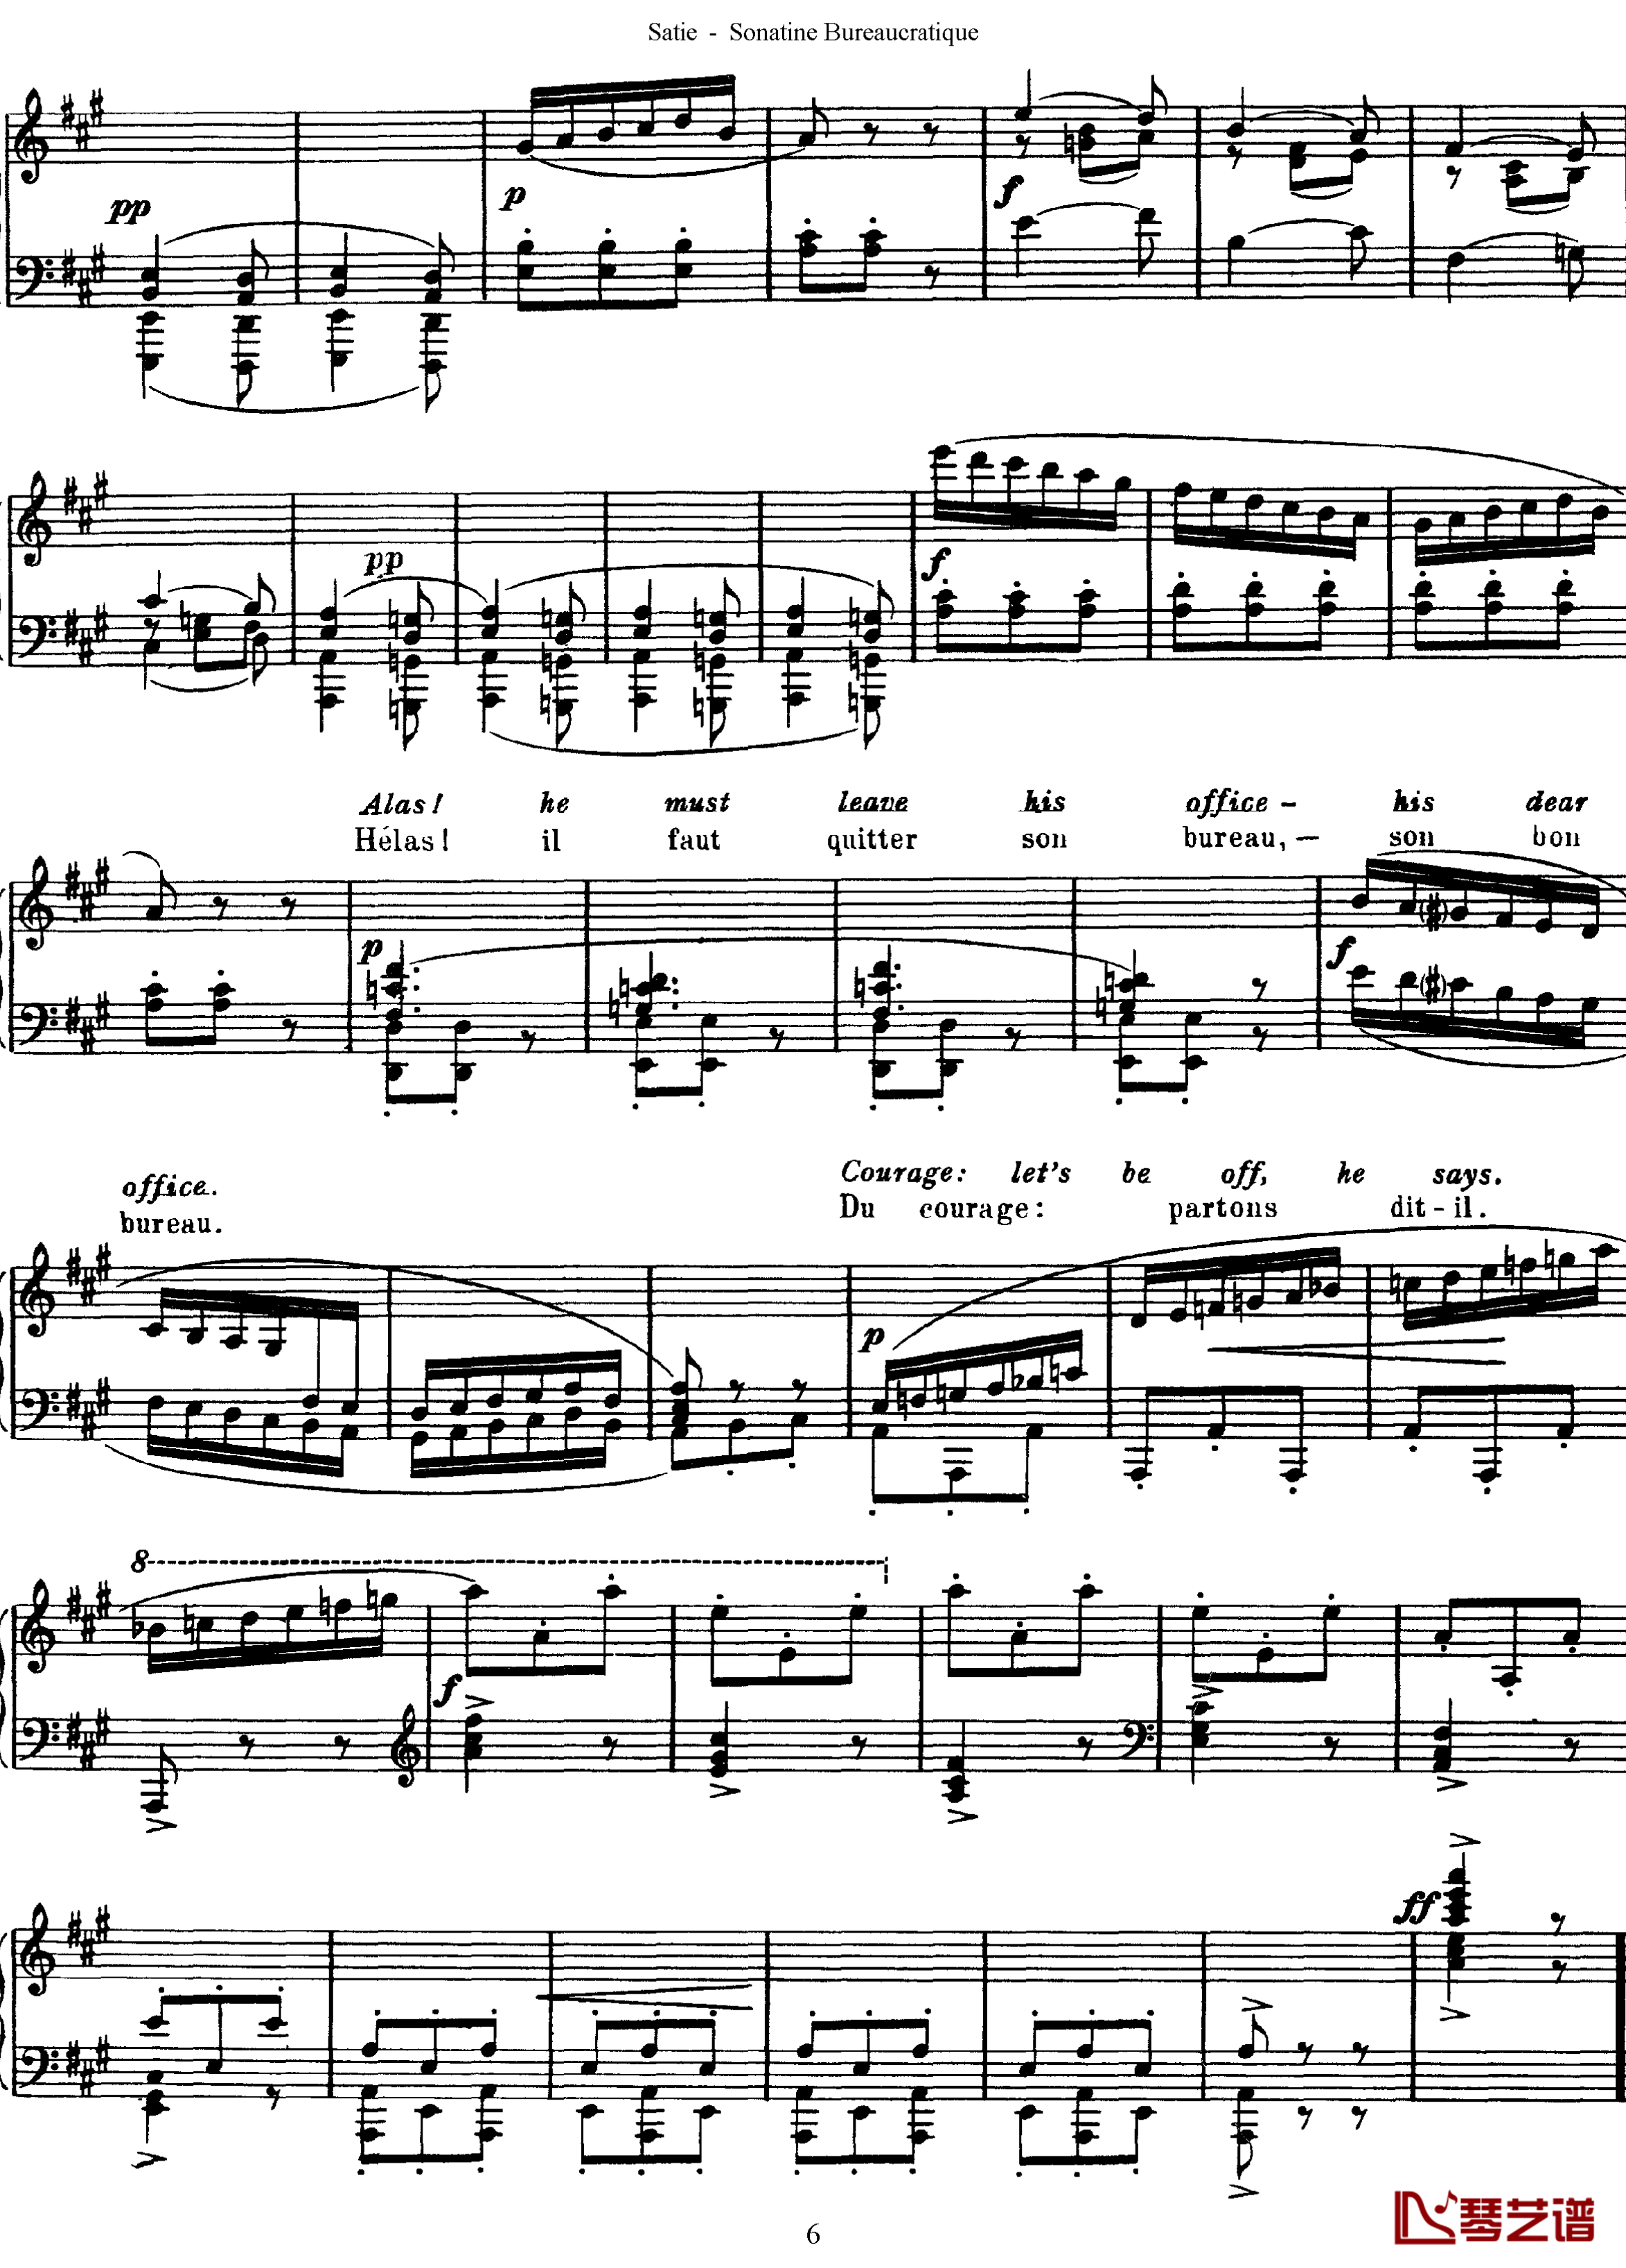 官僚小奏鸣曲钢琴谱-沙拉萨蒂6